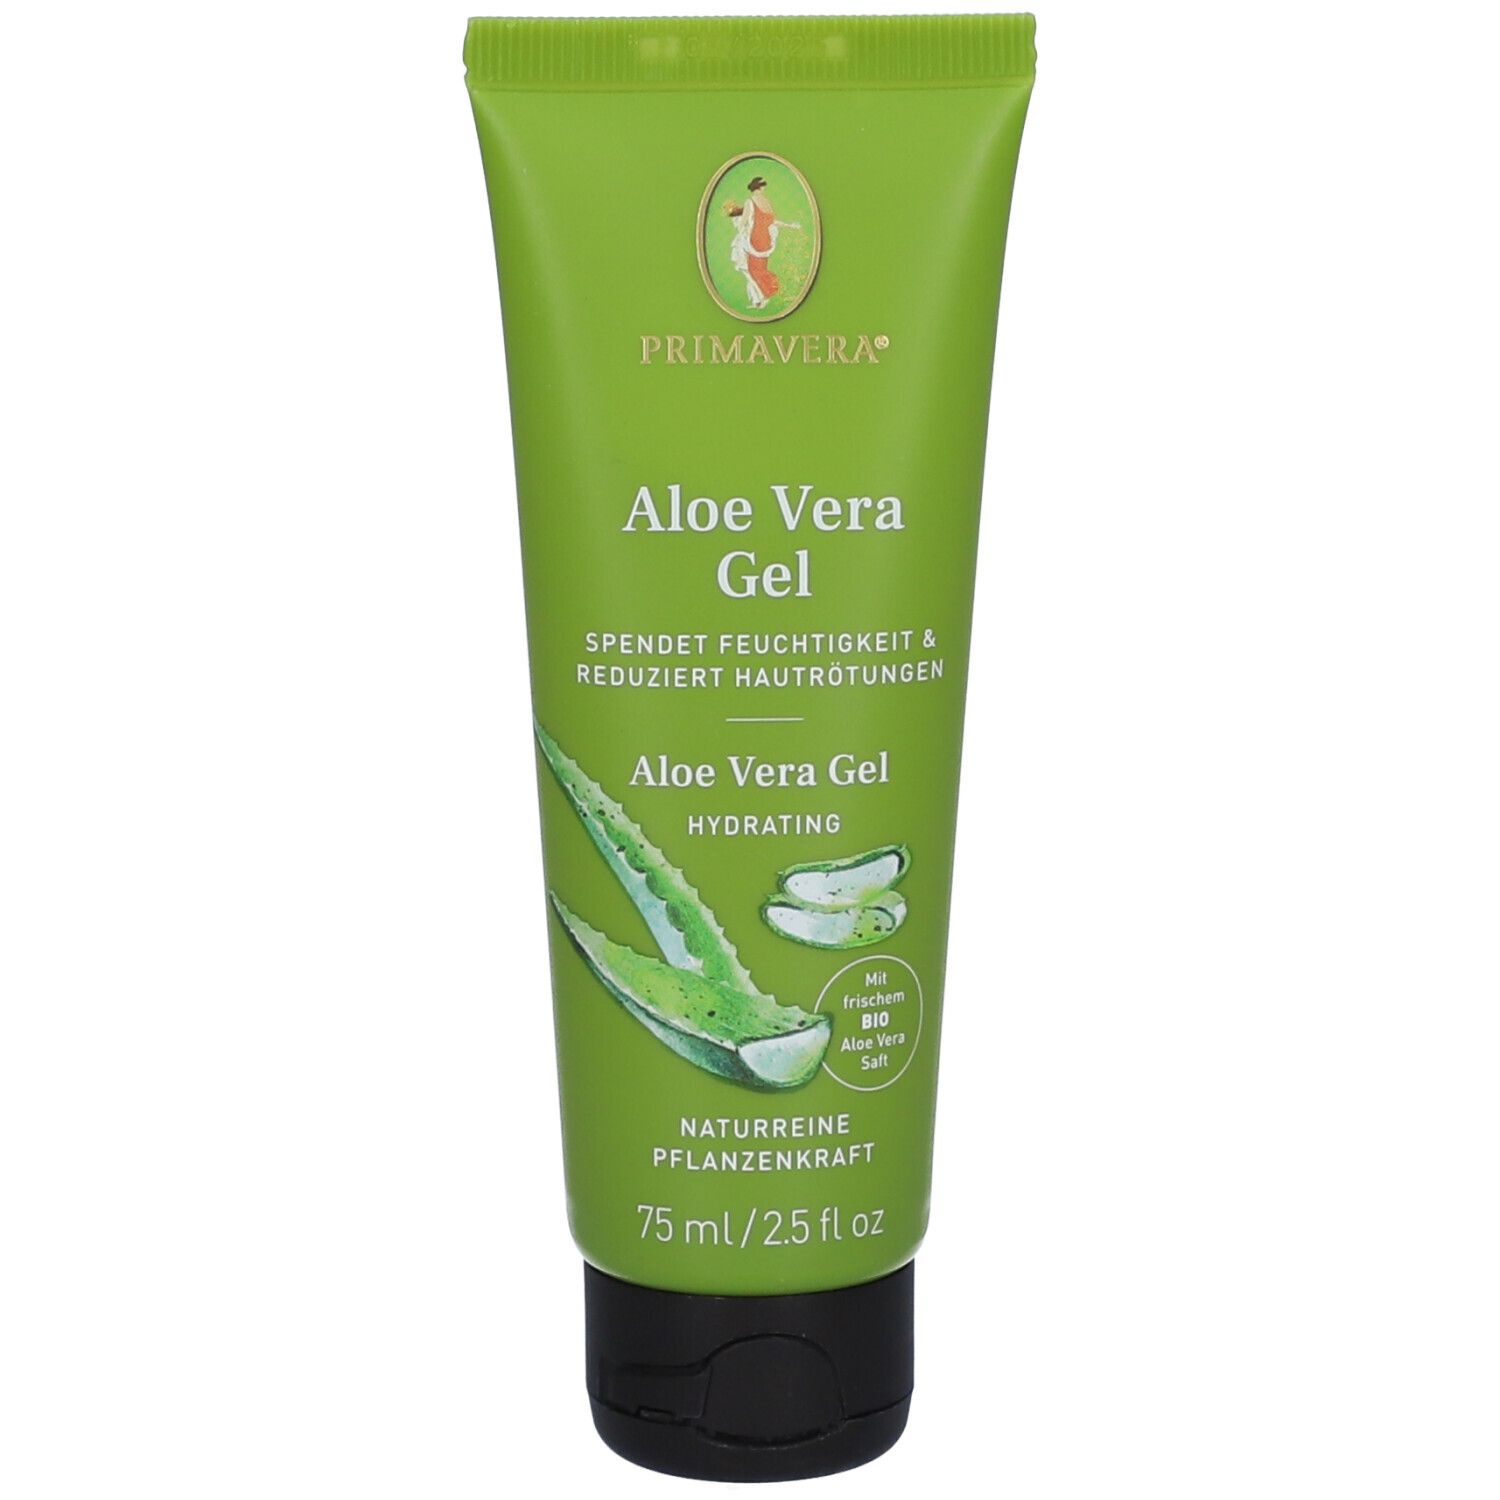 Aloe Vera Gel Biobeauty 75 Ml Shop Apotheke 5861